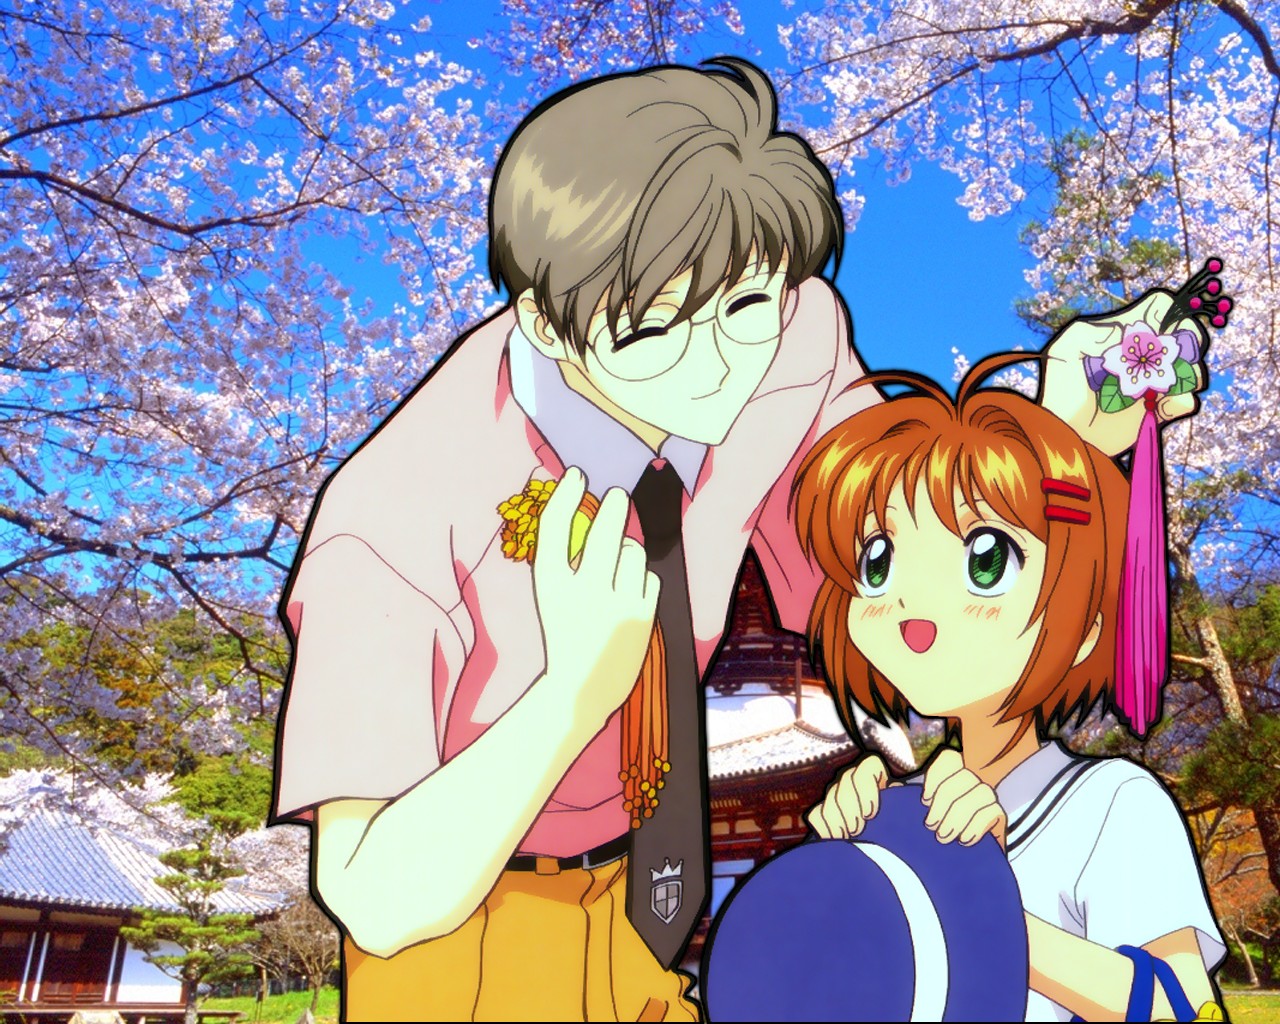 sakura y y syaoran: Imagenes de Sakura y Syaoran de Sakura Card Captor